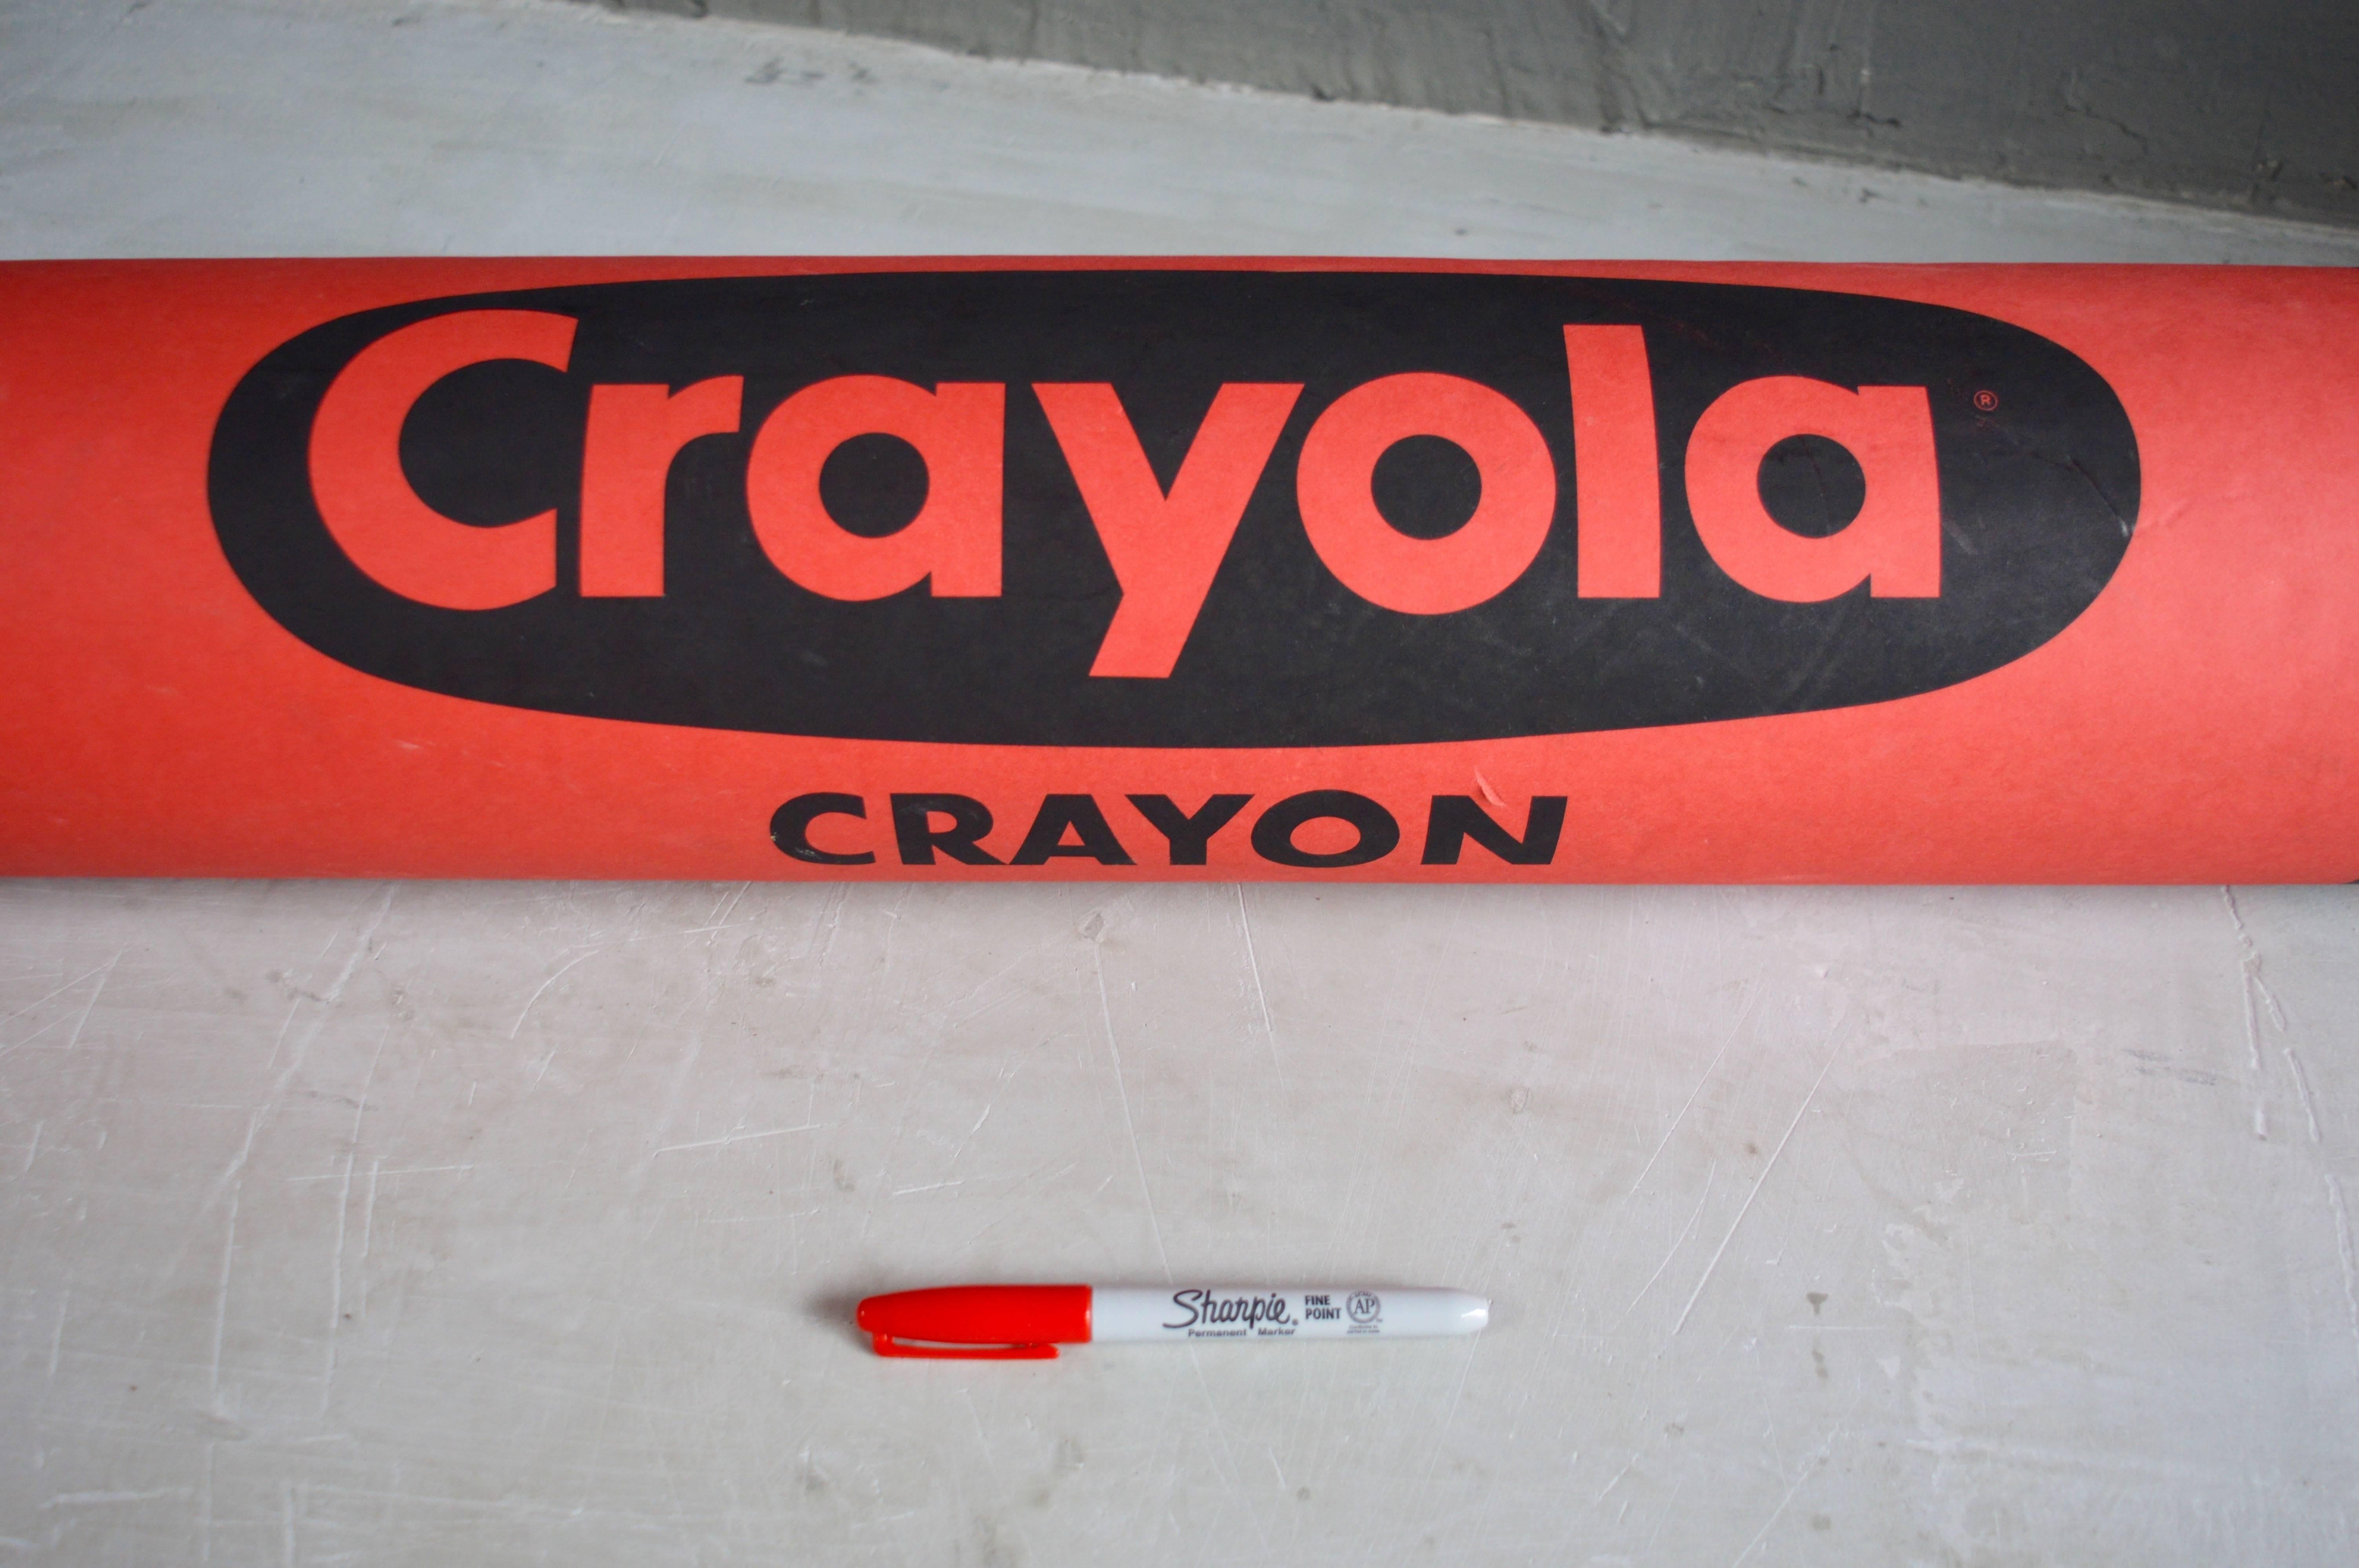 Monumental Crayola Crayon In Excellent Condition For Sale In Los Angeles, CA